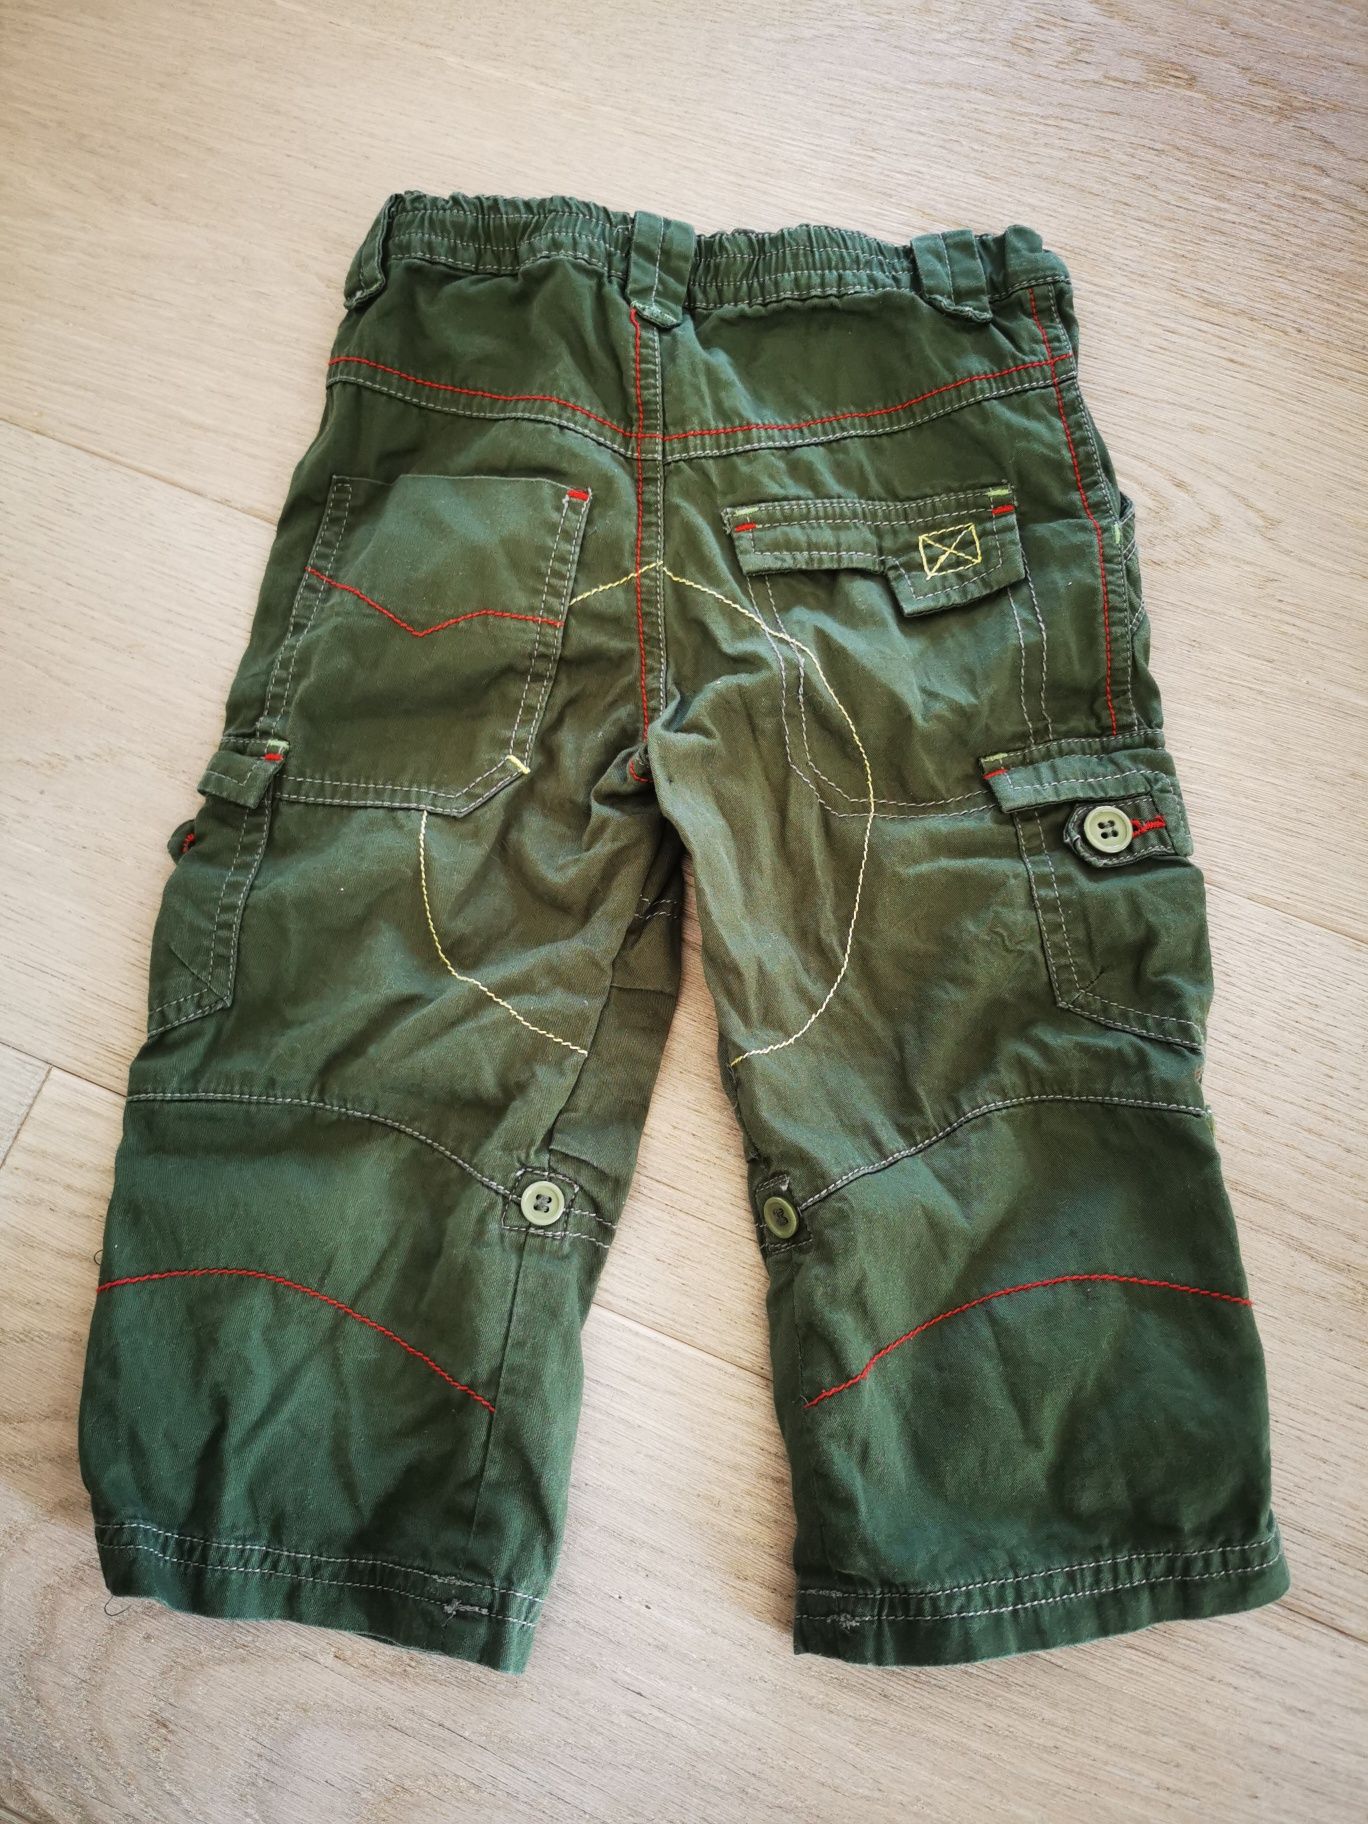 Spodnie zielone bojówki r. 80